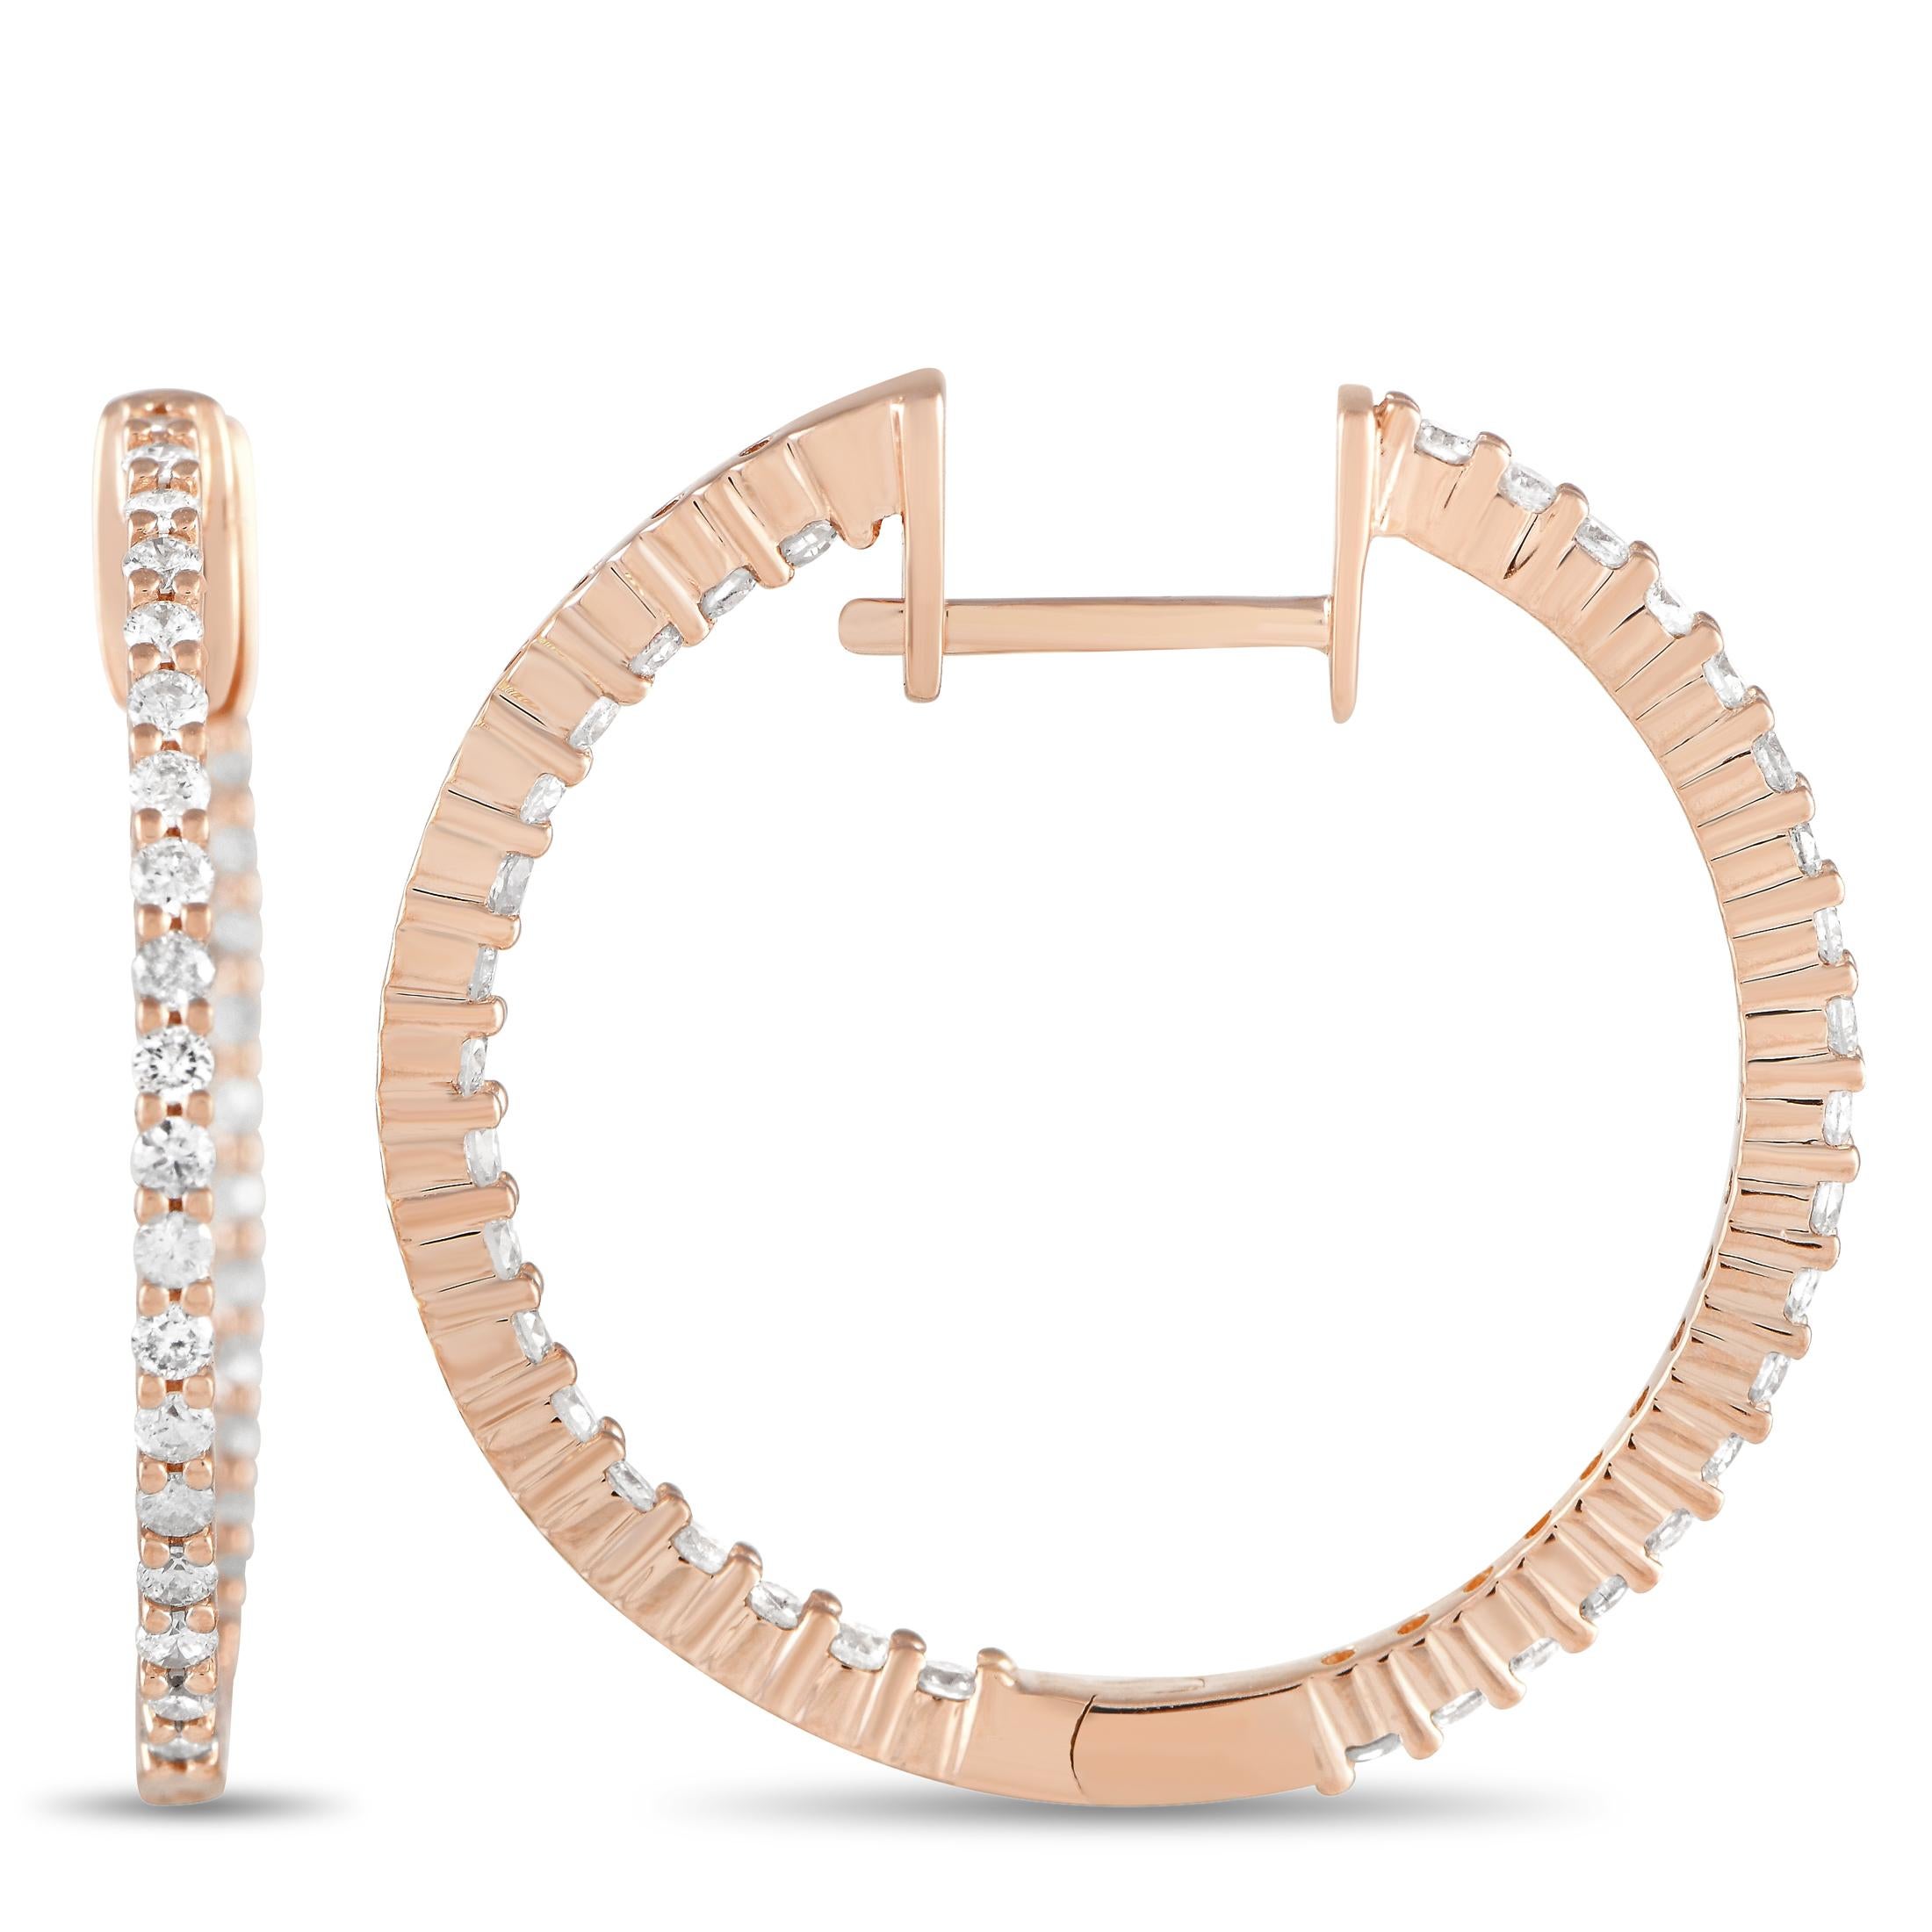 Diese femininen und doch kraftvollen Diamantreifen aus Roségold sind eine vielseitige Ergänzung Ihrer Schmucksammlung. Jeder Reifen misst 1